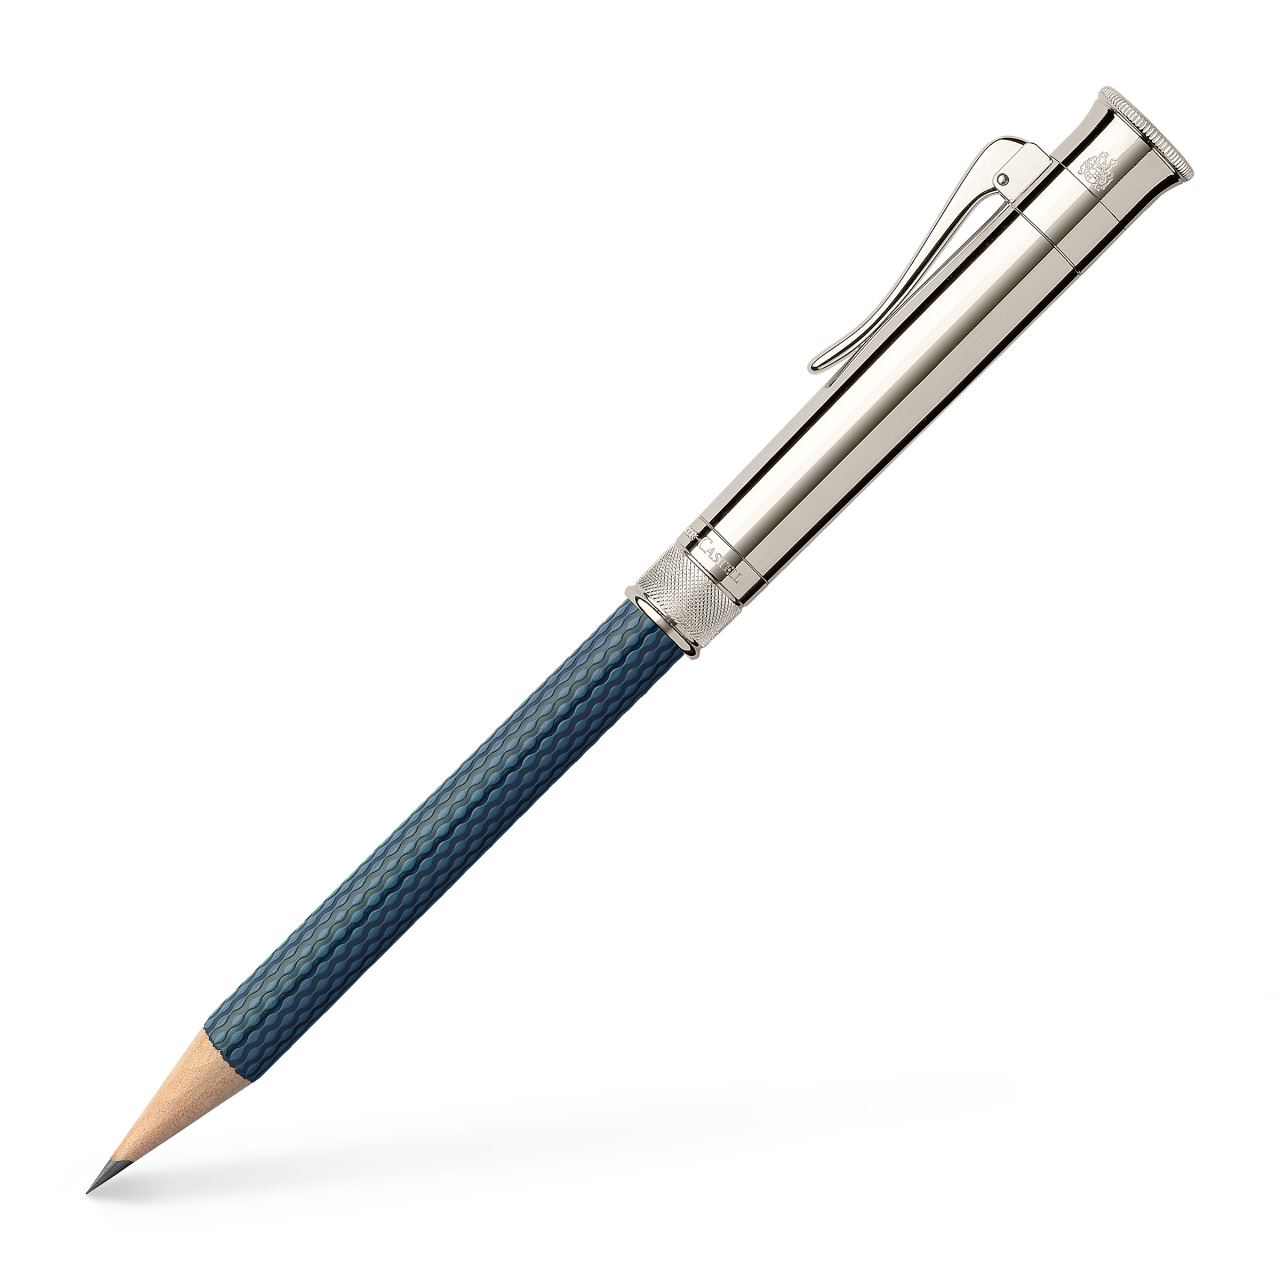 Graf-von-Faber-Castell - Crayon Excellence, plaqué platine, bleu nuit